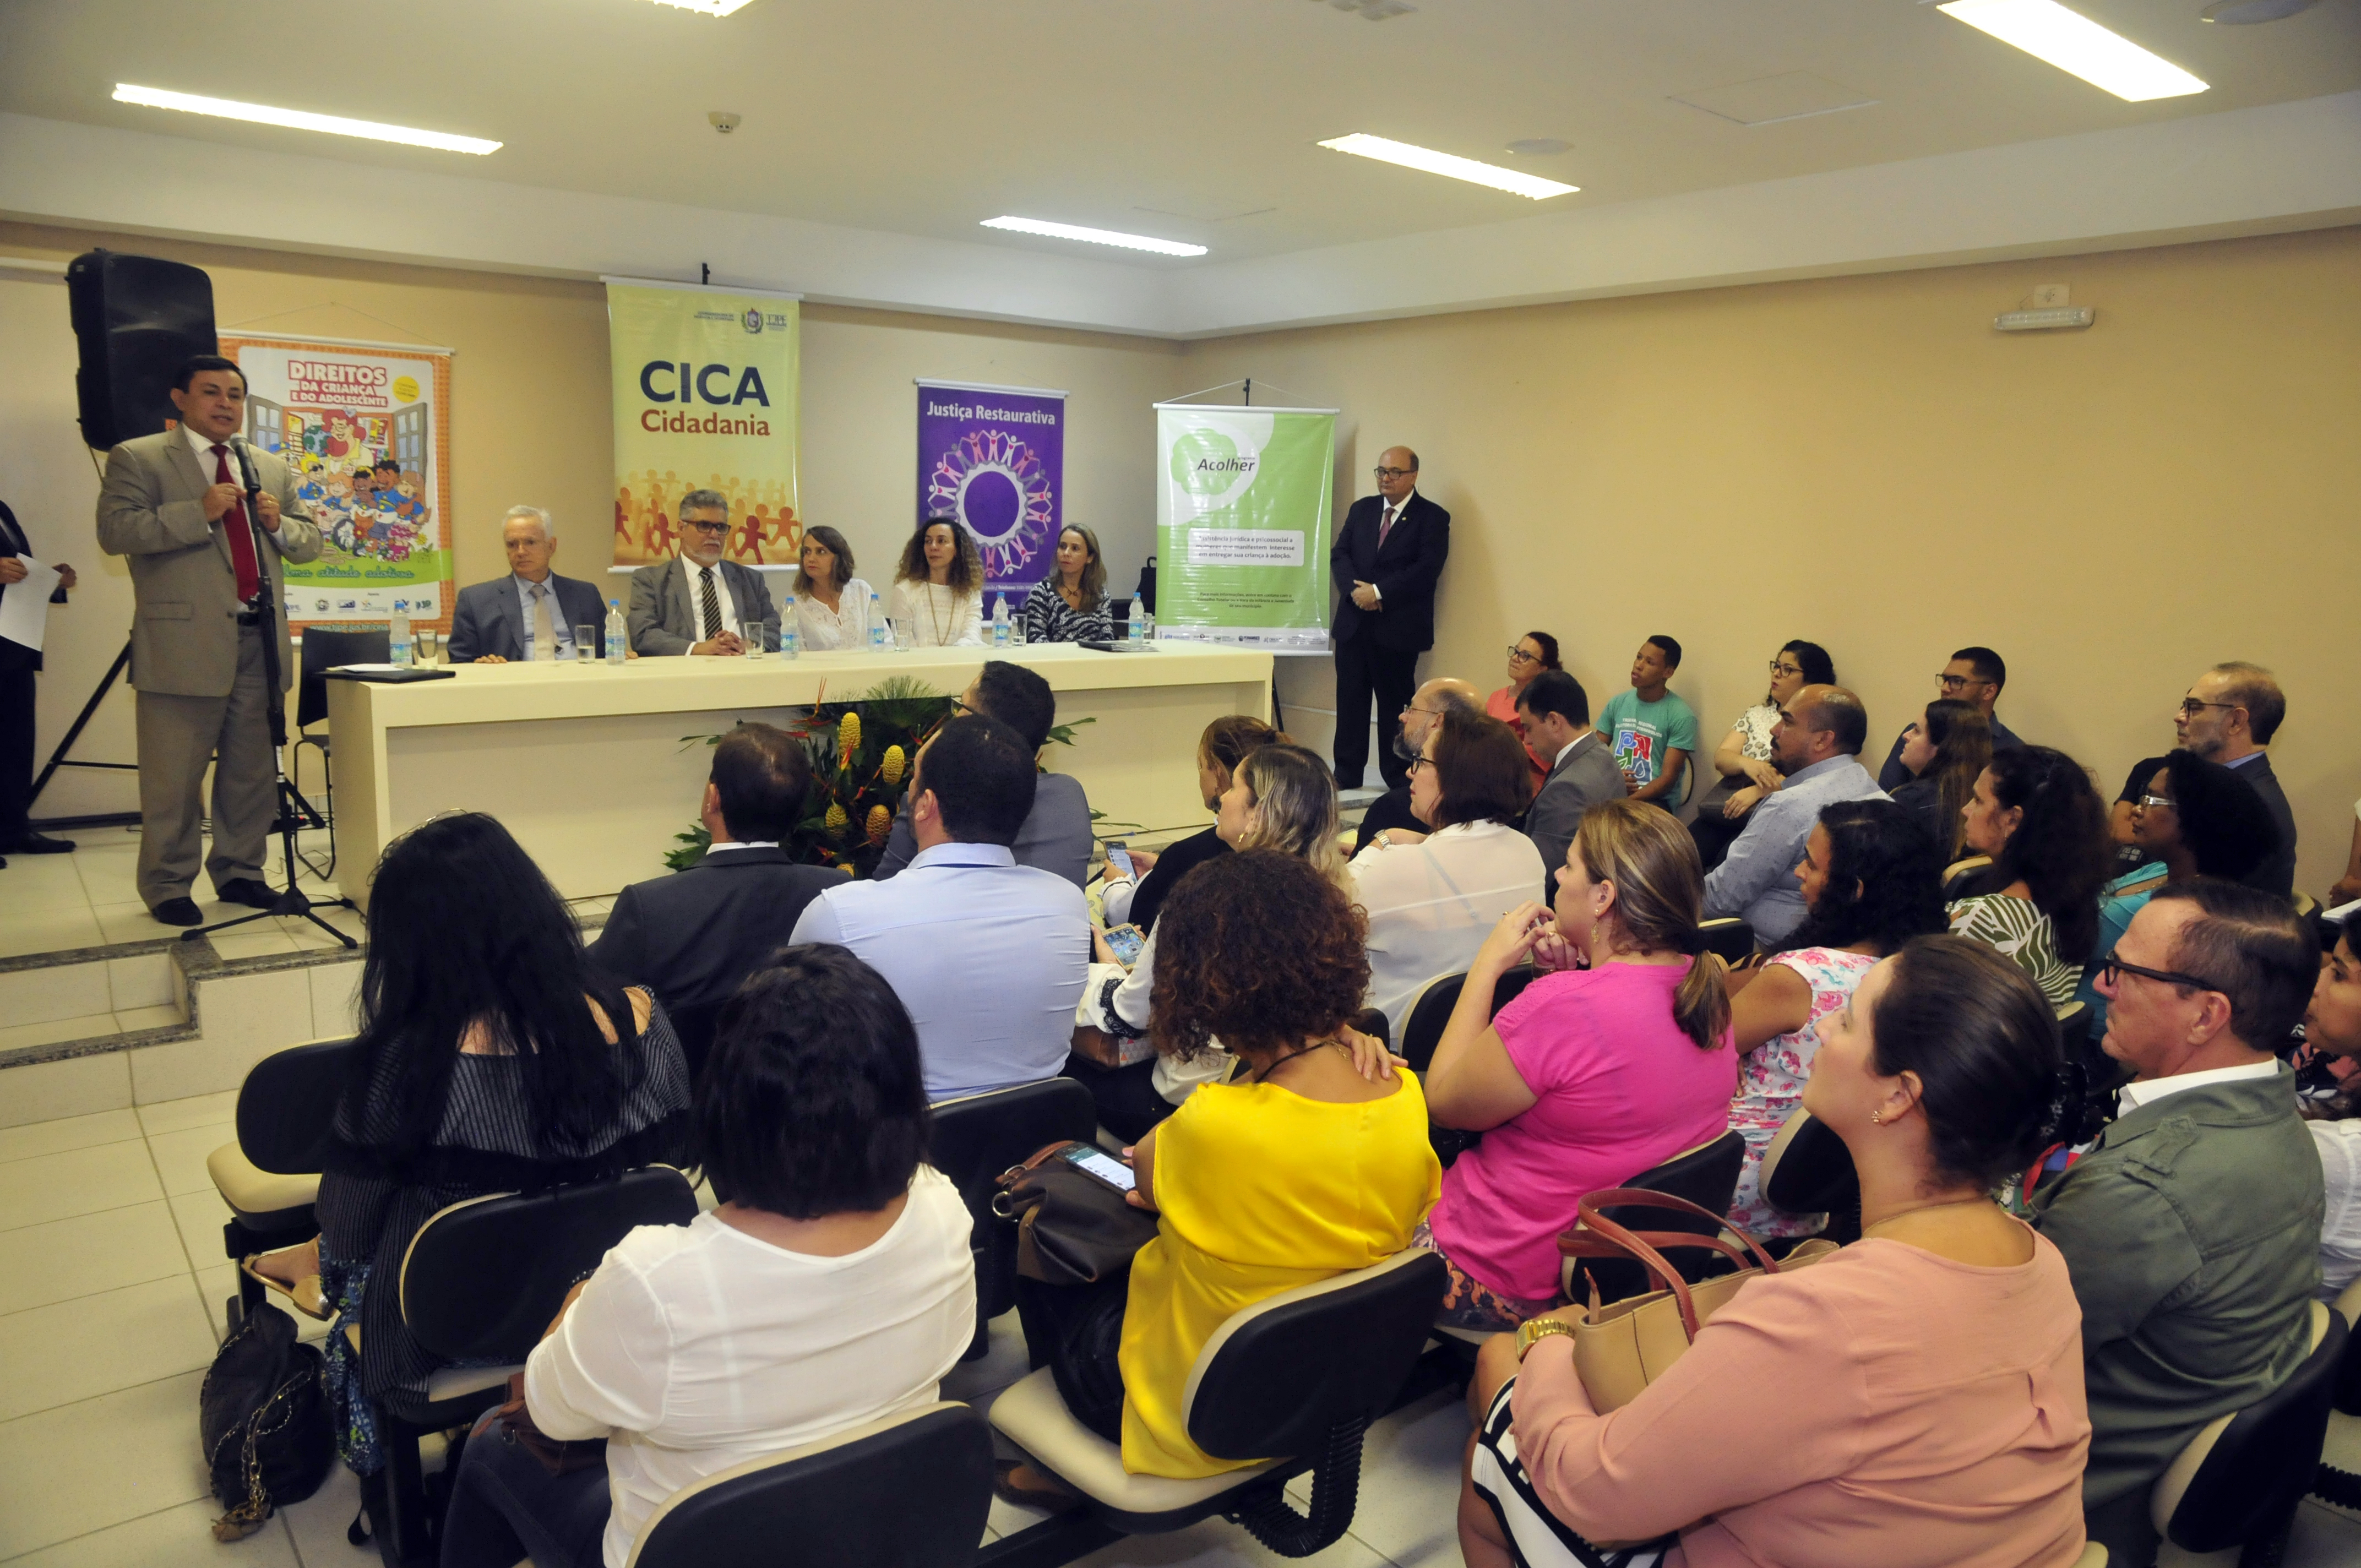 Juiz Paulo Brandão fala para o público durante lançamento do programa Cica Cidadania